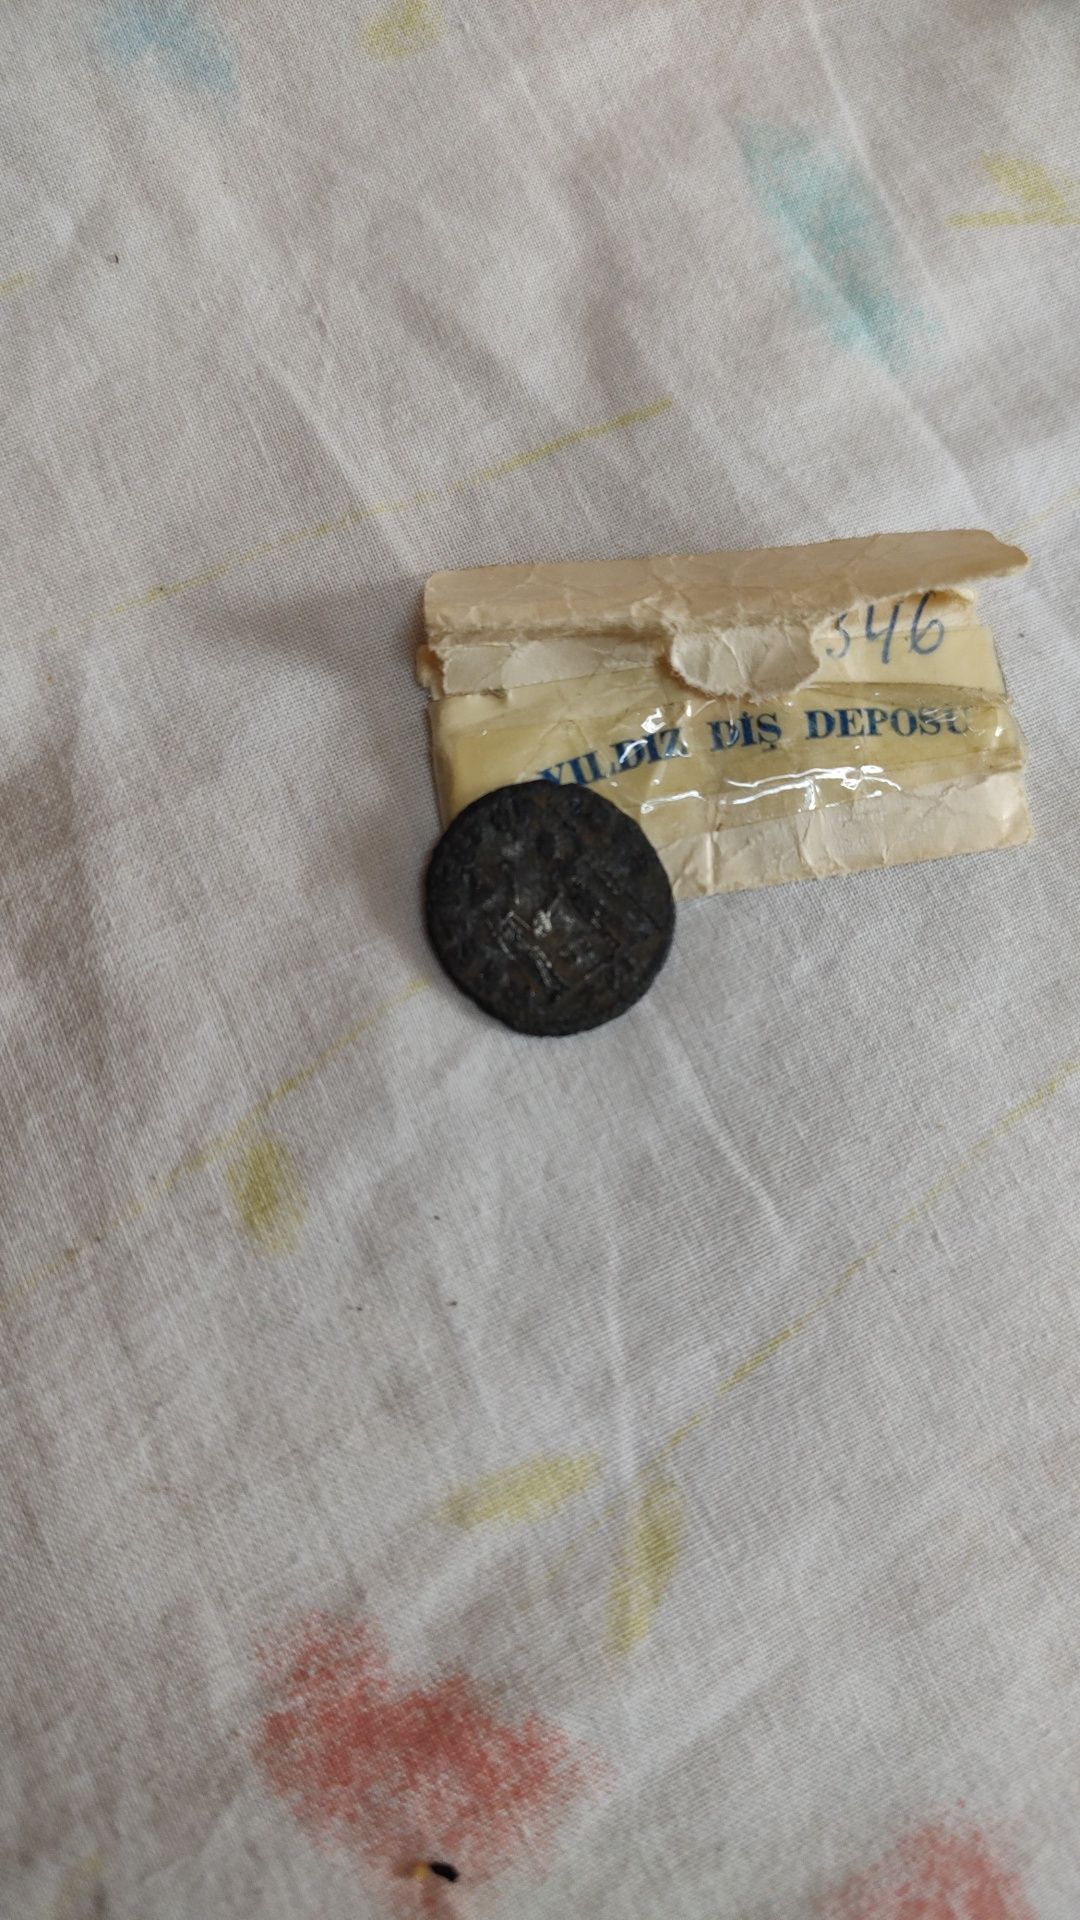 Moneda foarte veche găsită în plicutelul acela